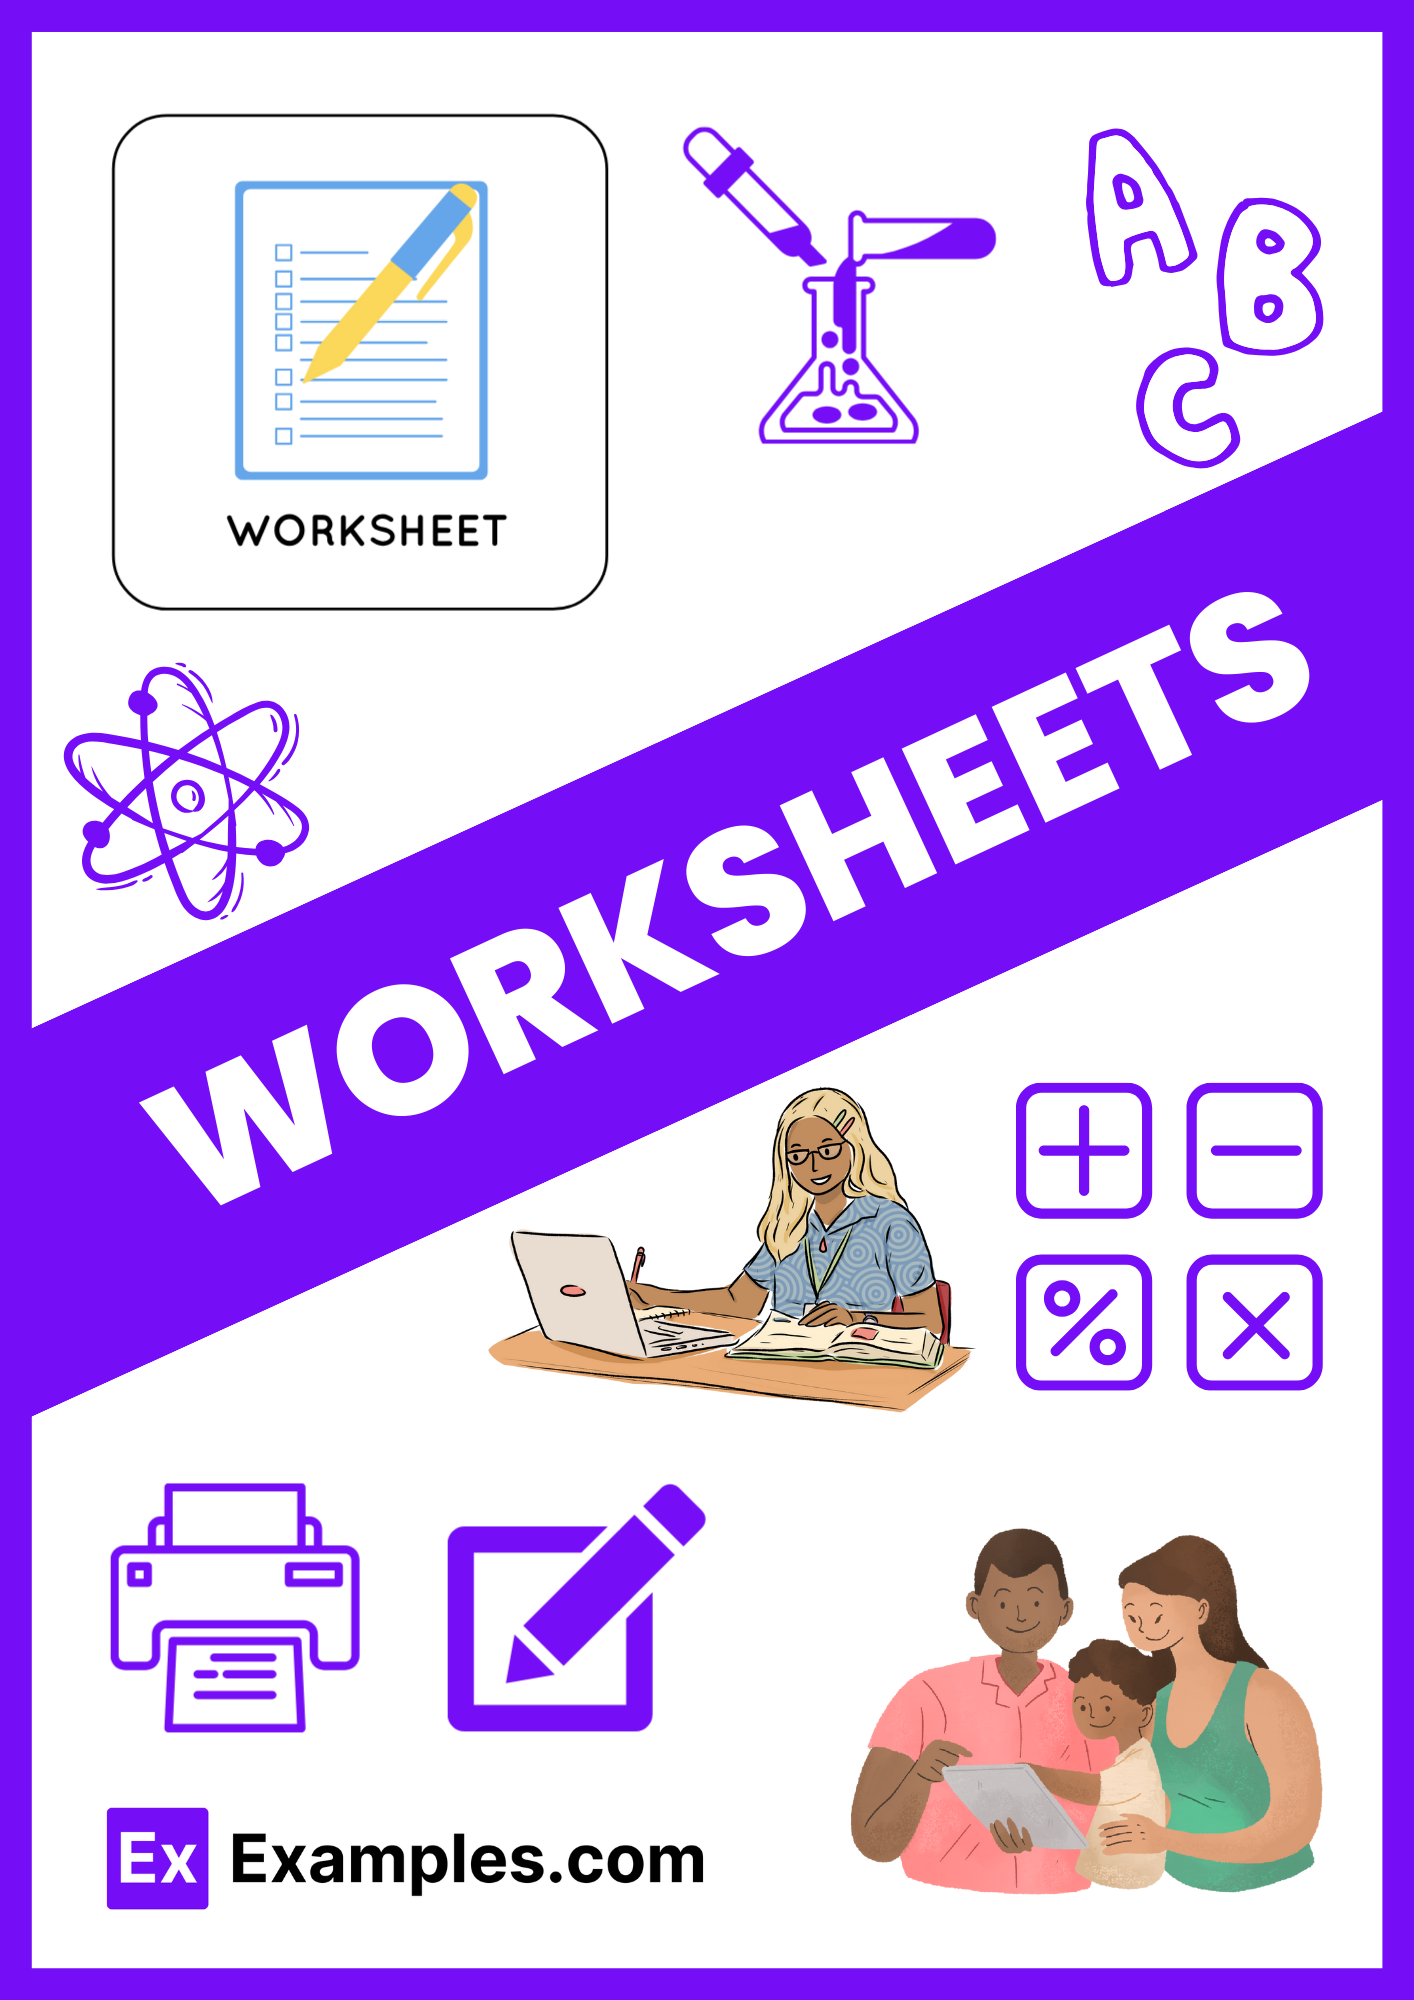 Worksheets